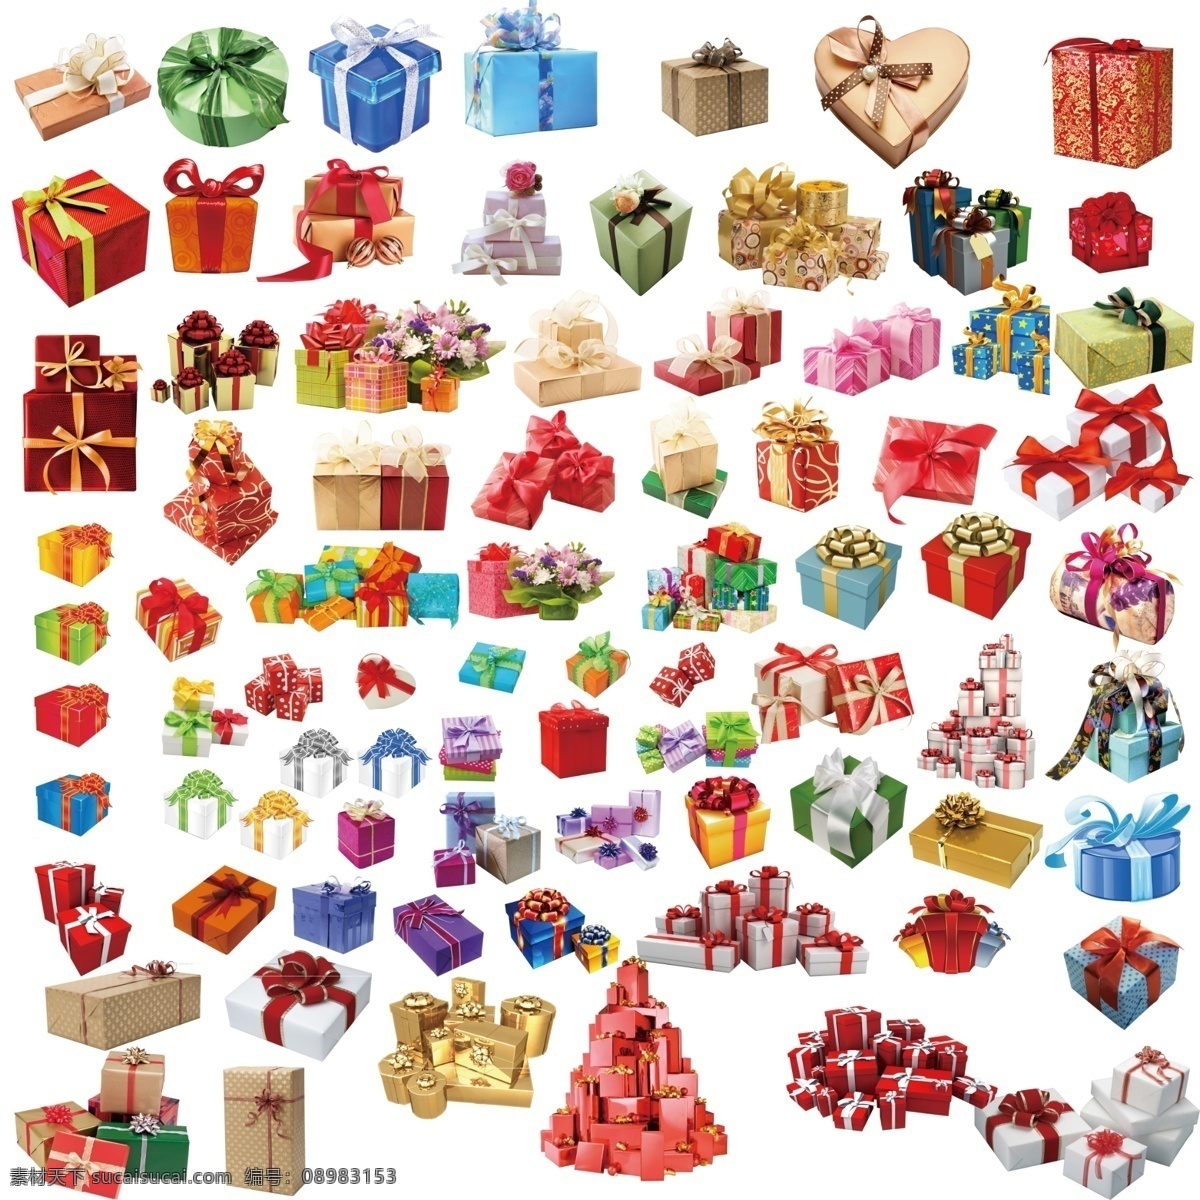 礼盒礼品活动 礼品 礼品元素 地产礼品 活动礼品 活动元素 礼盒元素 各种礼品礼盒 礼盒 分层